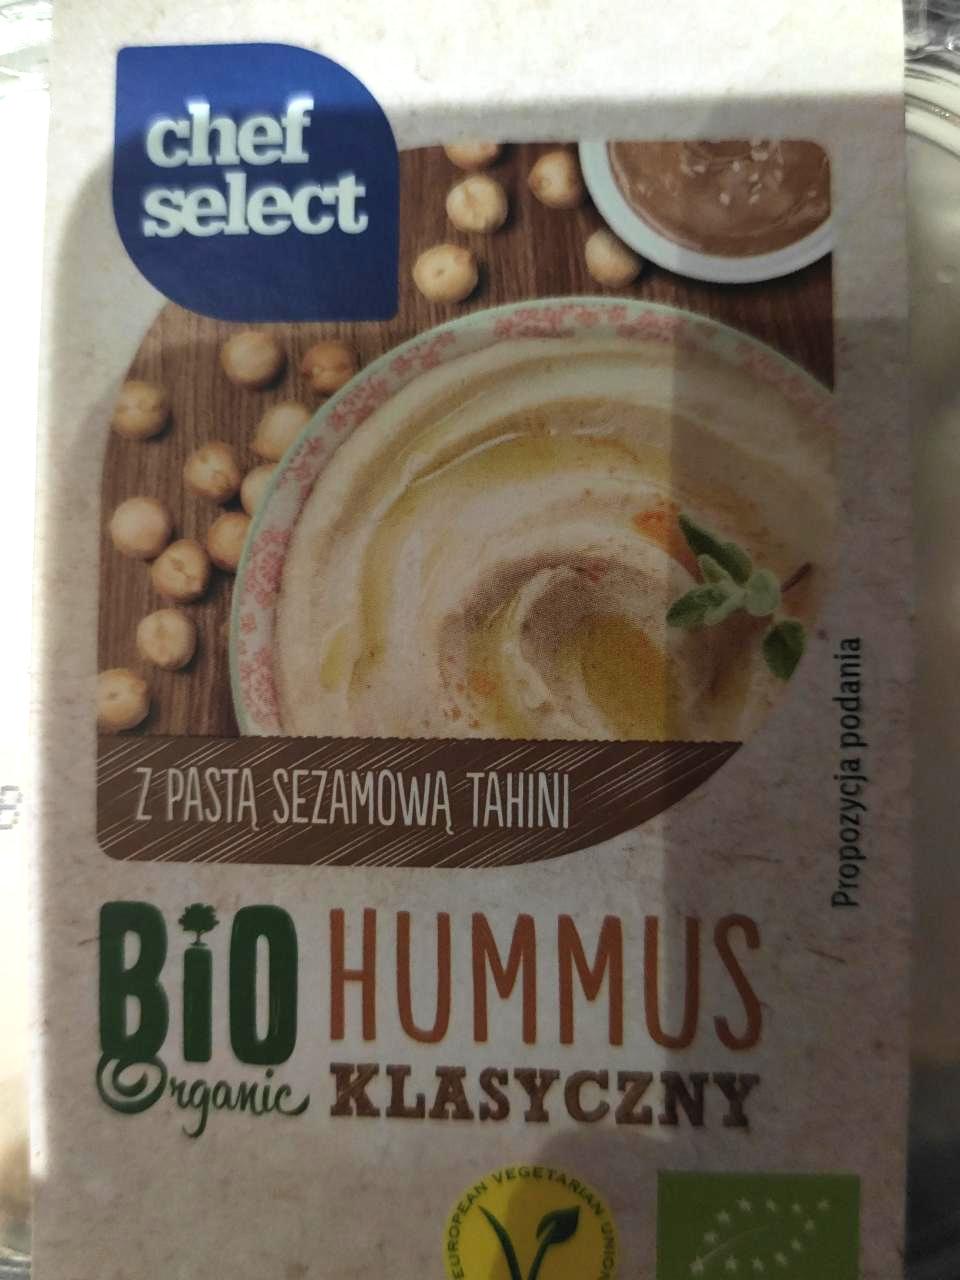 Zdjęcia - Hummus Klasyczny Chef select